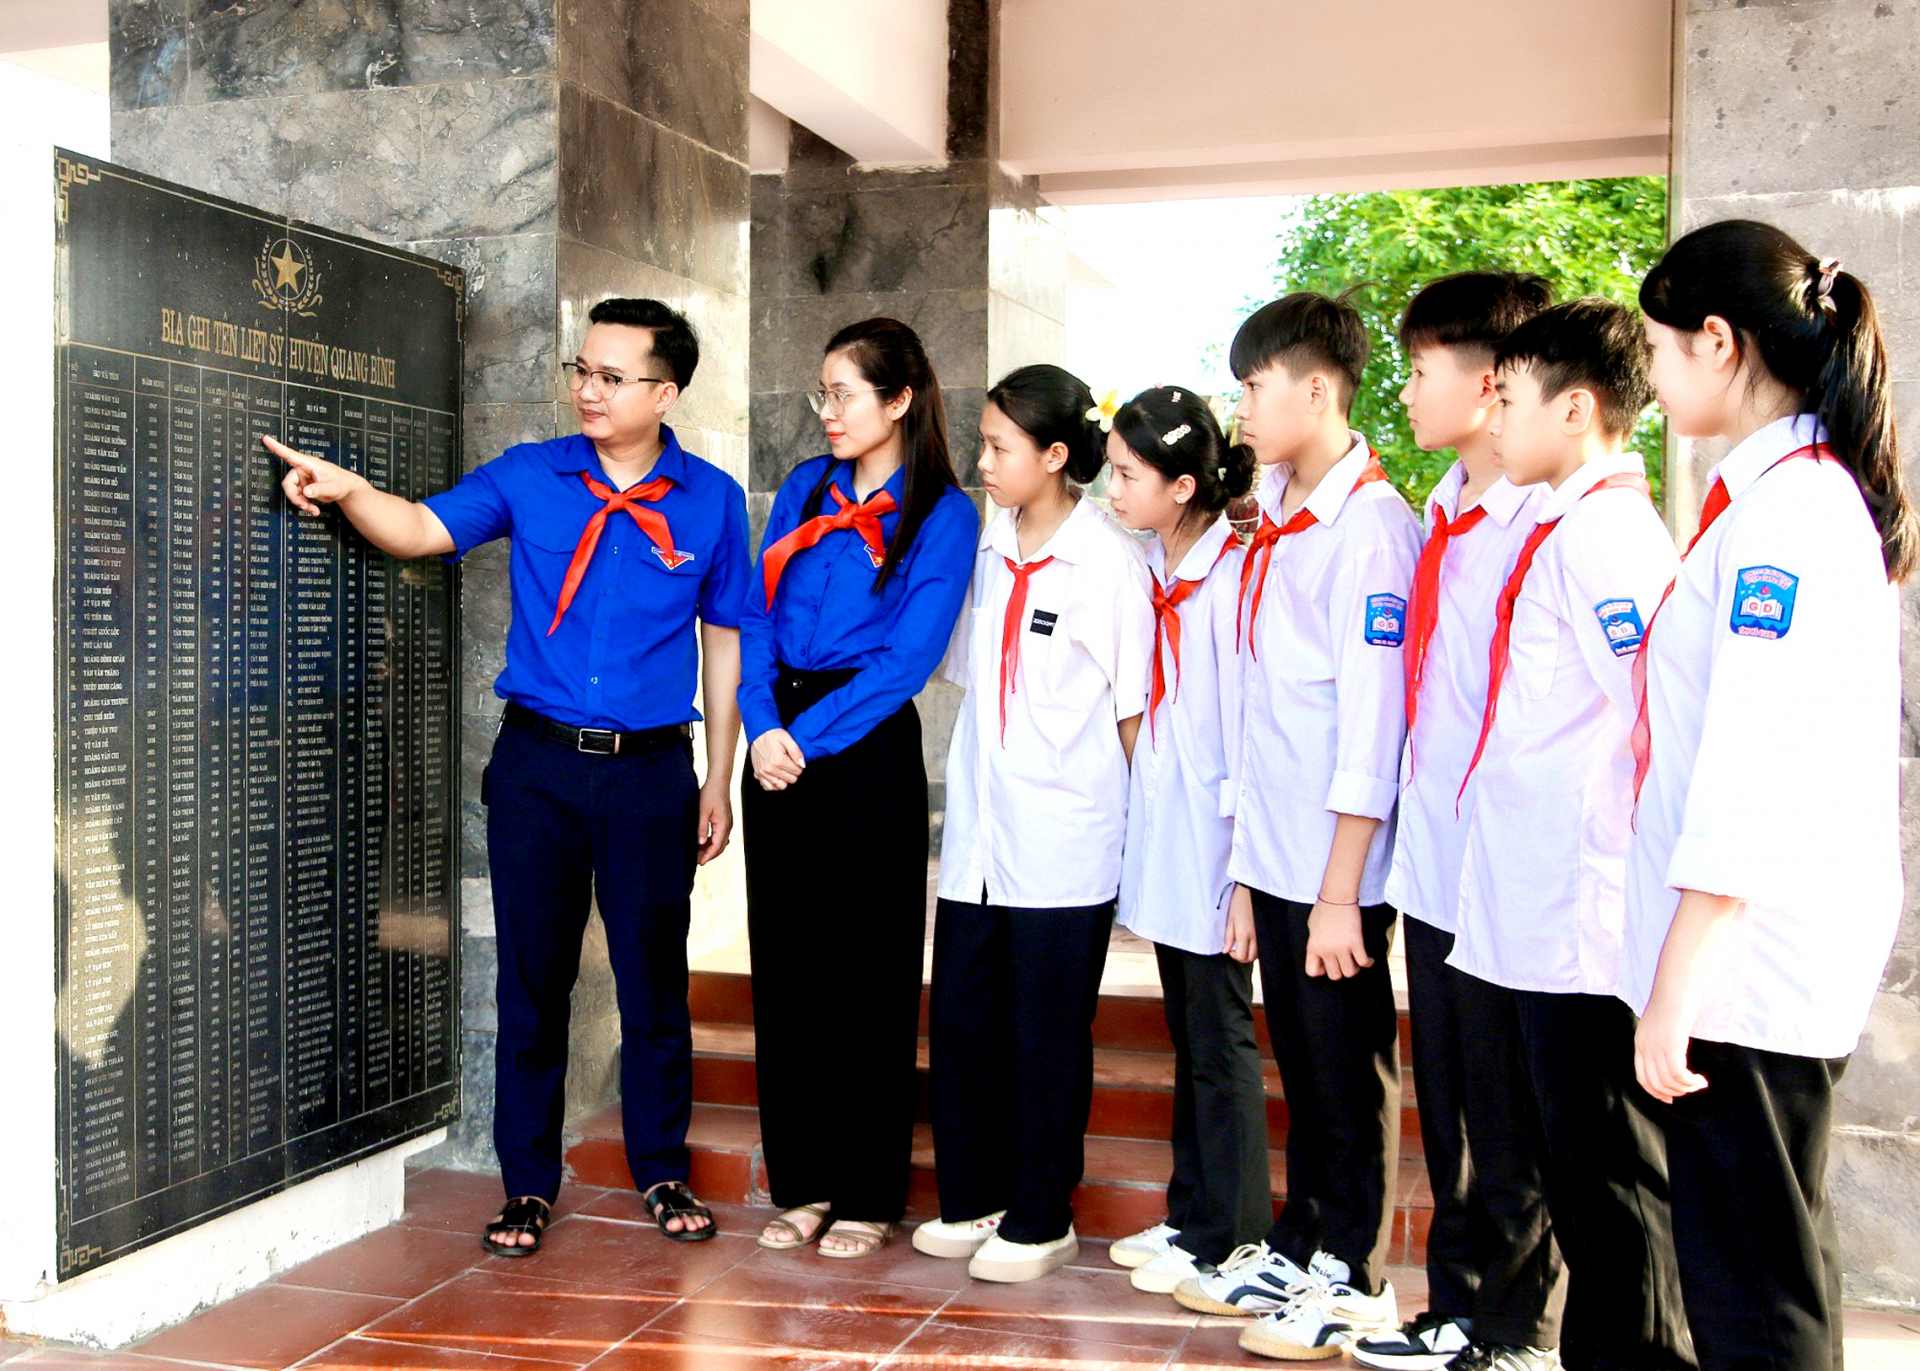 Hội đồng Đội huyện Quang Bình tuyên truyền, giáo dục lý tưởng cách mạng cho các em thiếu niên.
